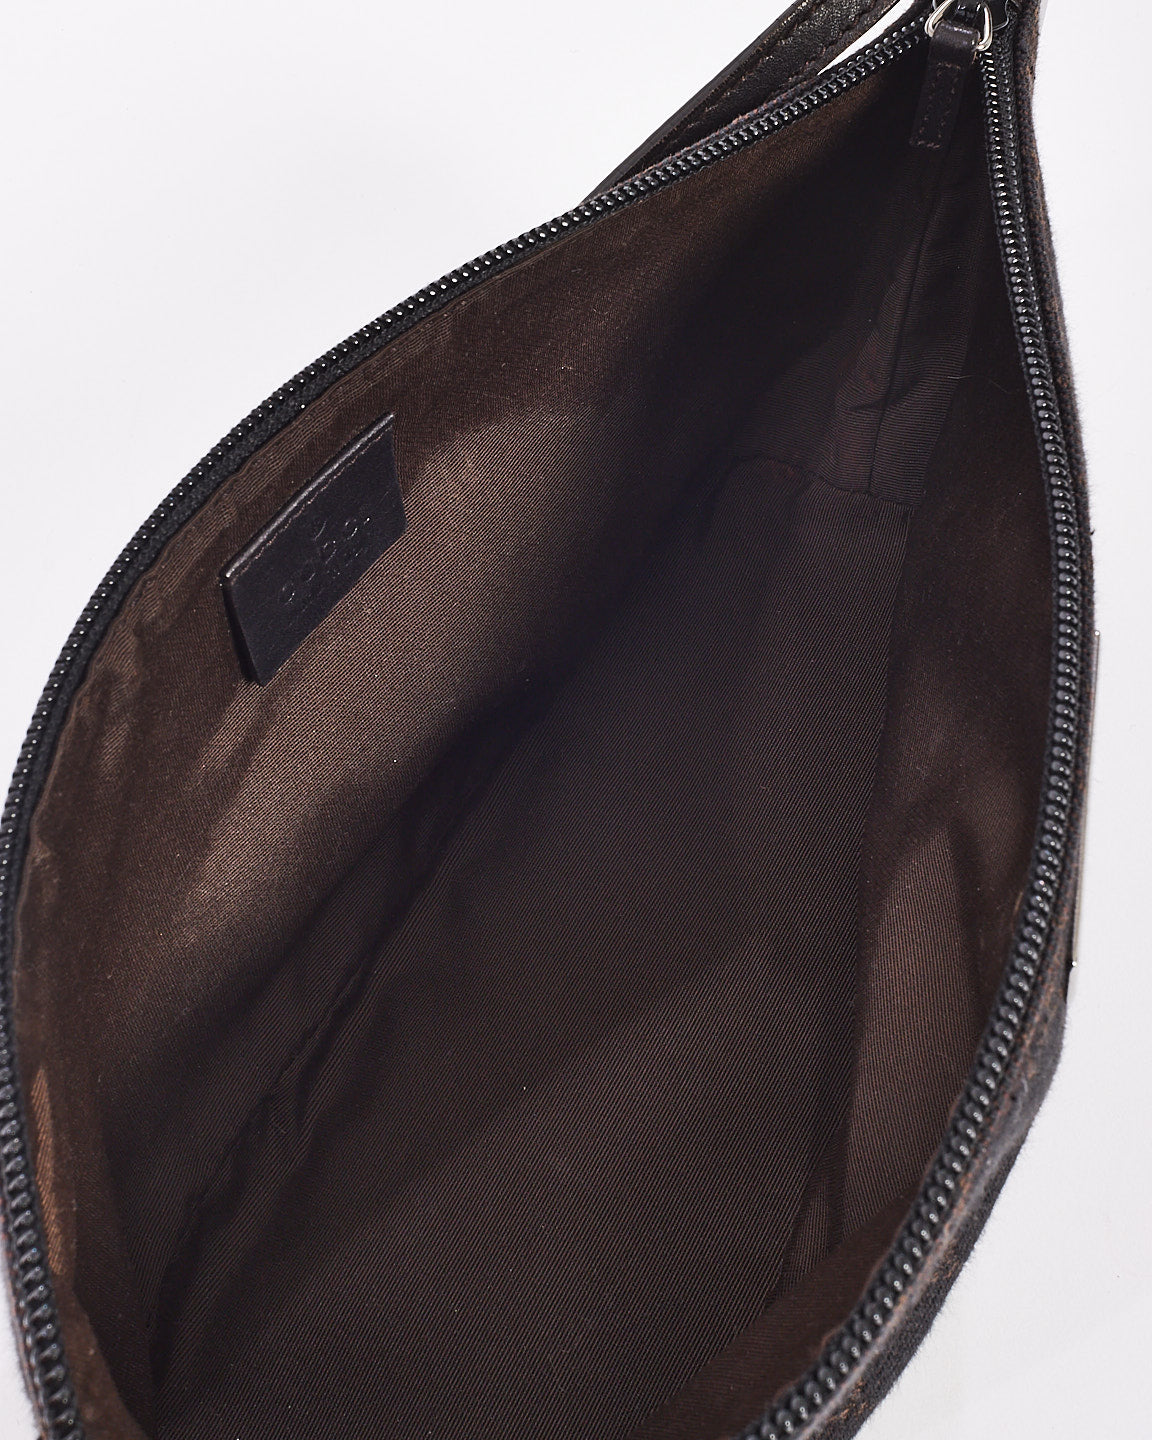 Gucci Black/Brown Monogram GG Canvas Boat Pochette Shoulder Bag